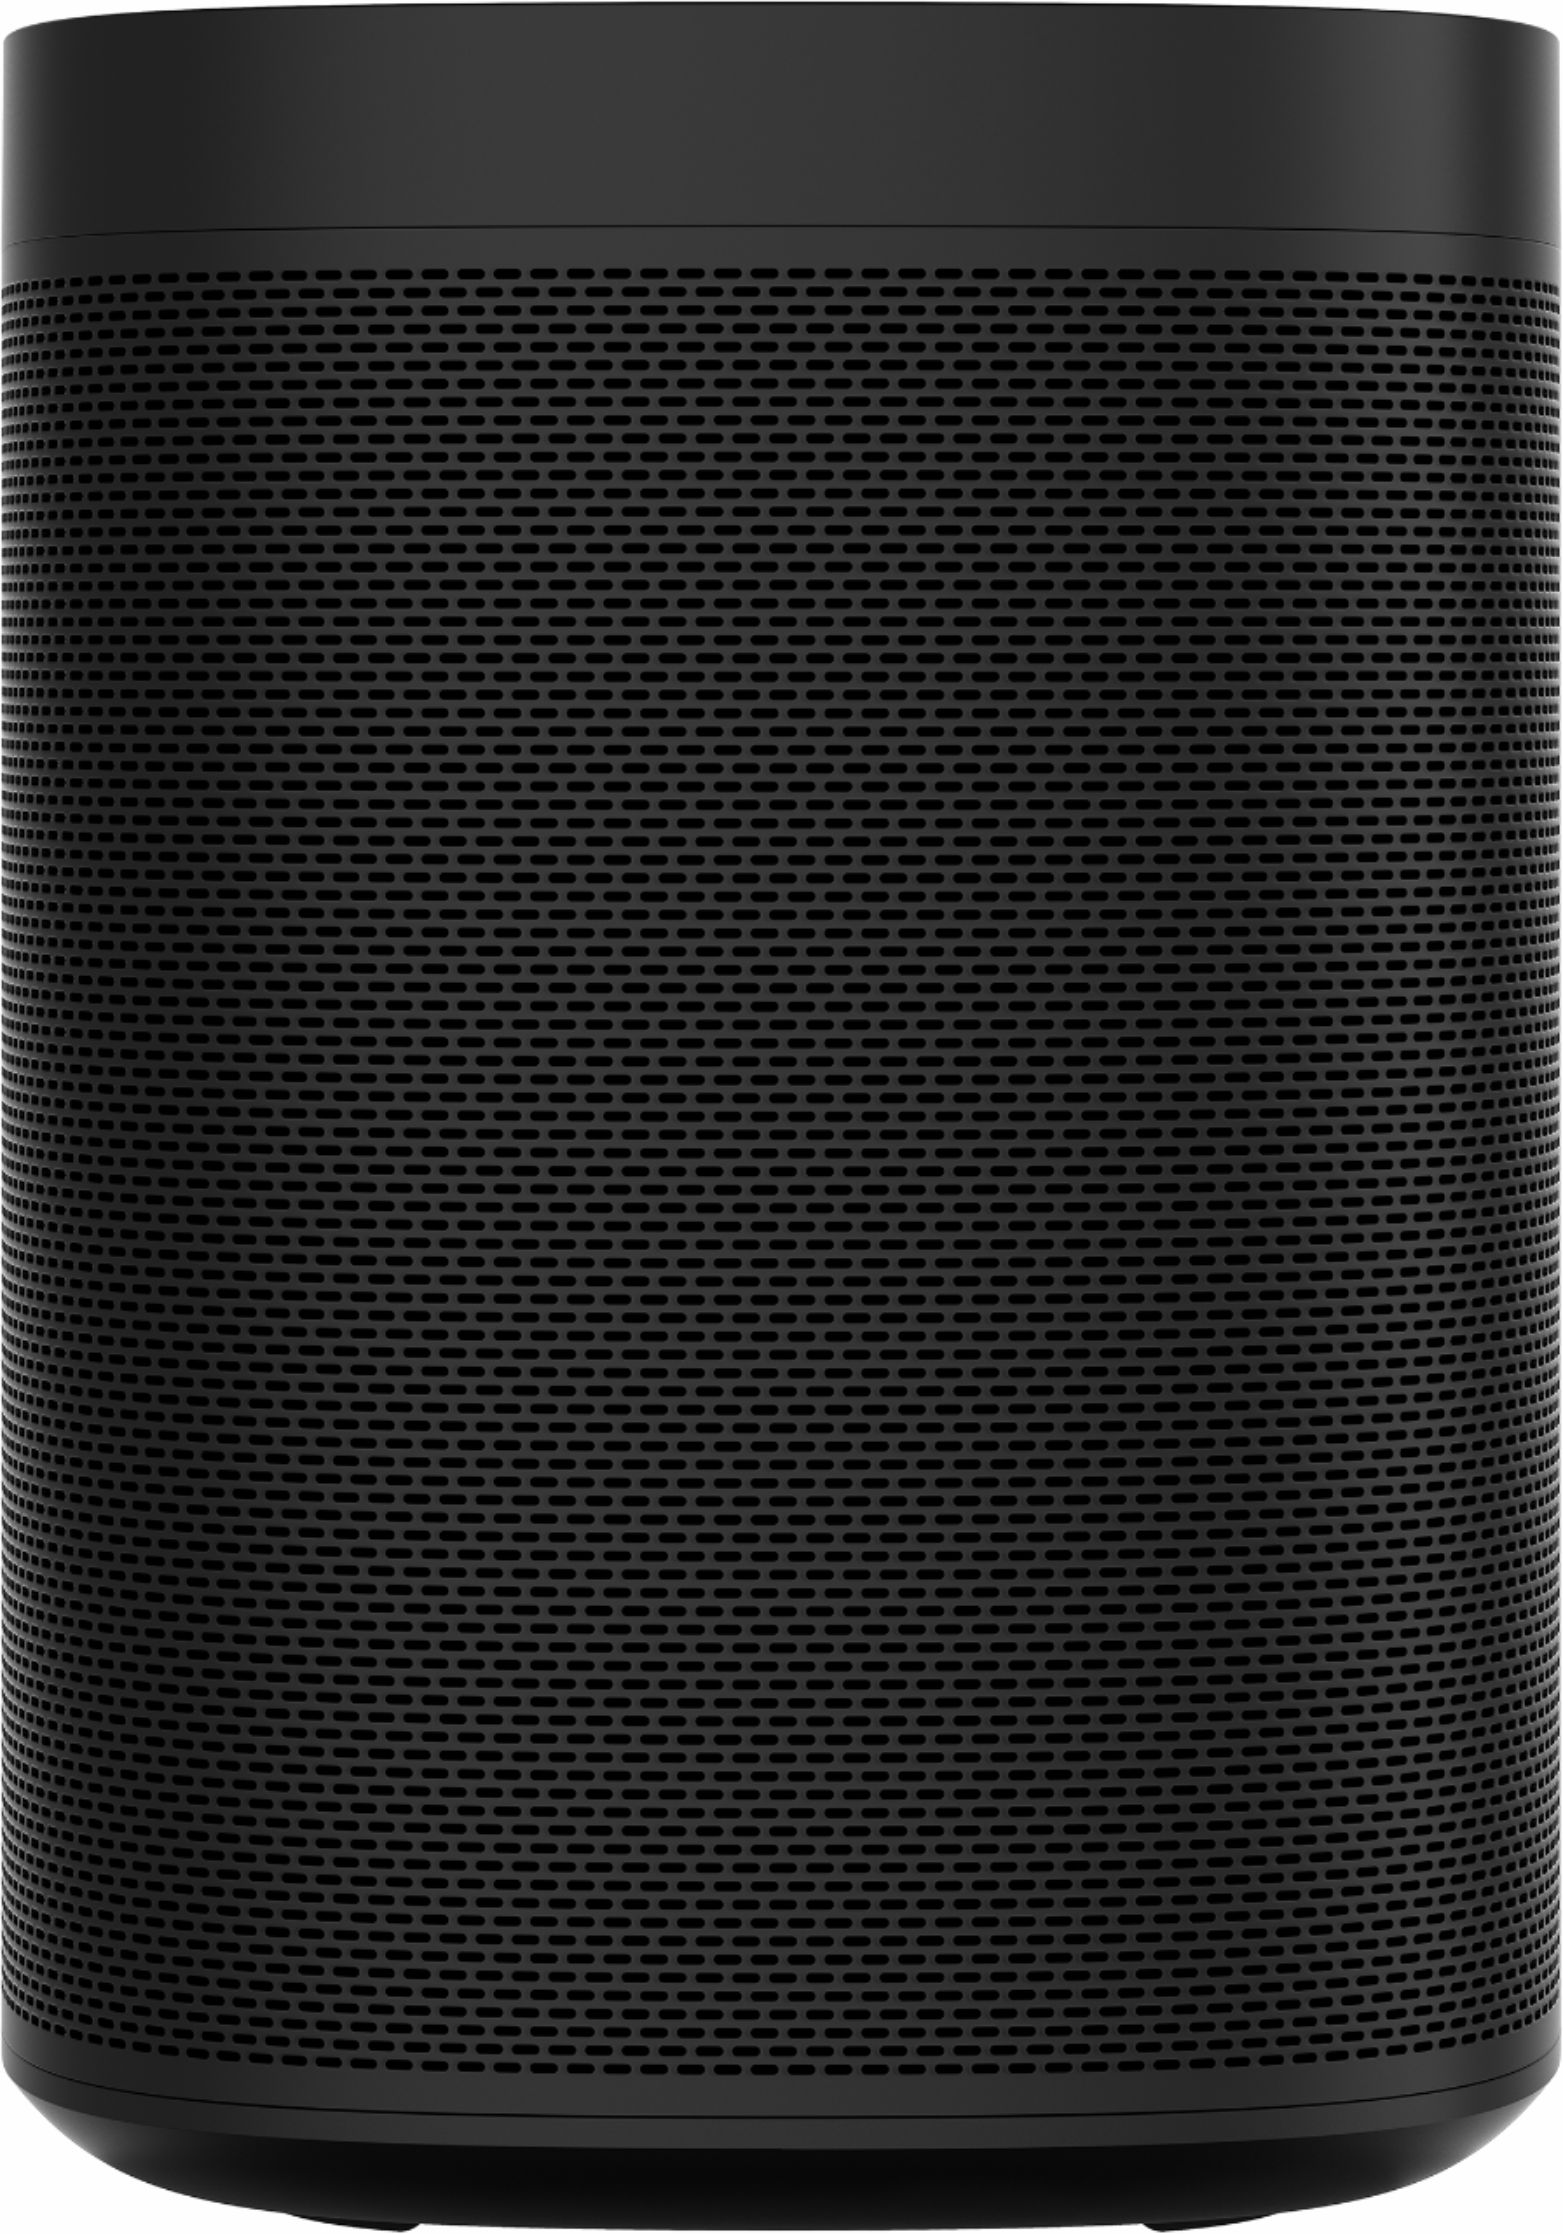 Notesbog skridtlængde schweizisk Sonos One (Gen 2) Smart Speaker with Voice Control built-in Black  ONEG2US1BLK - Best Buy